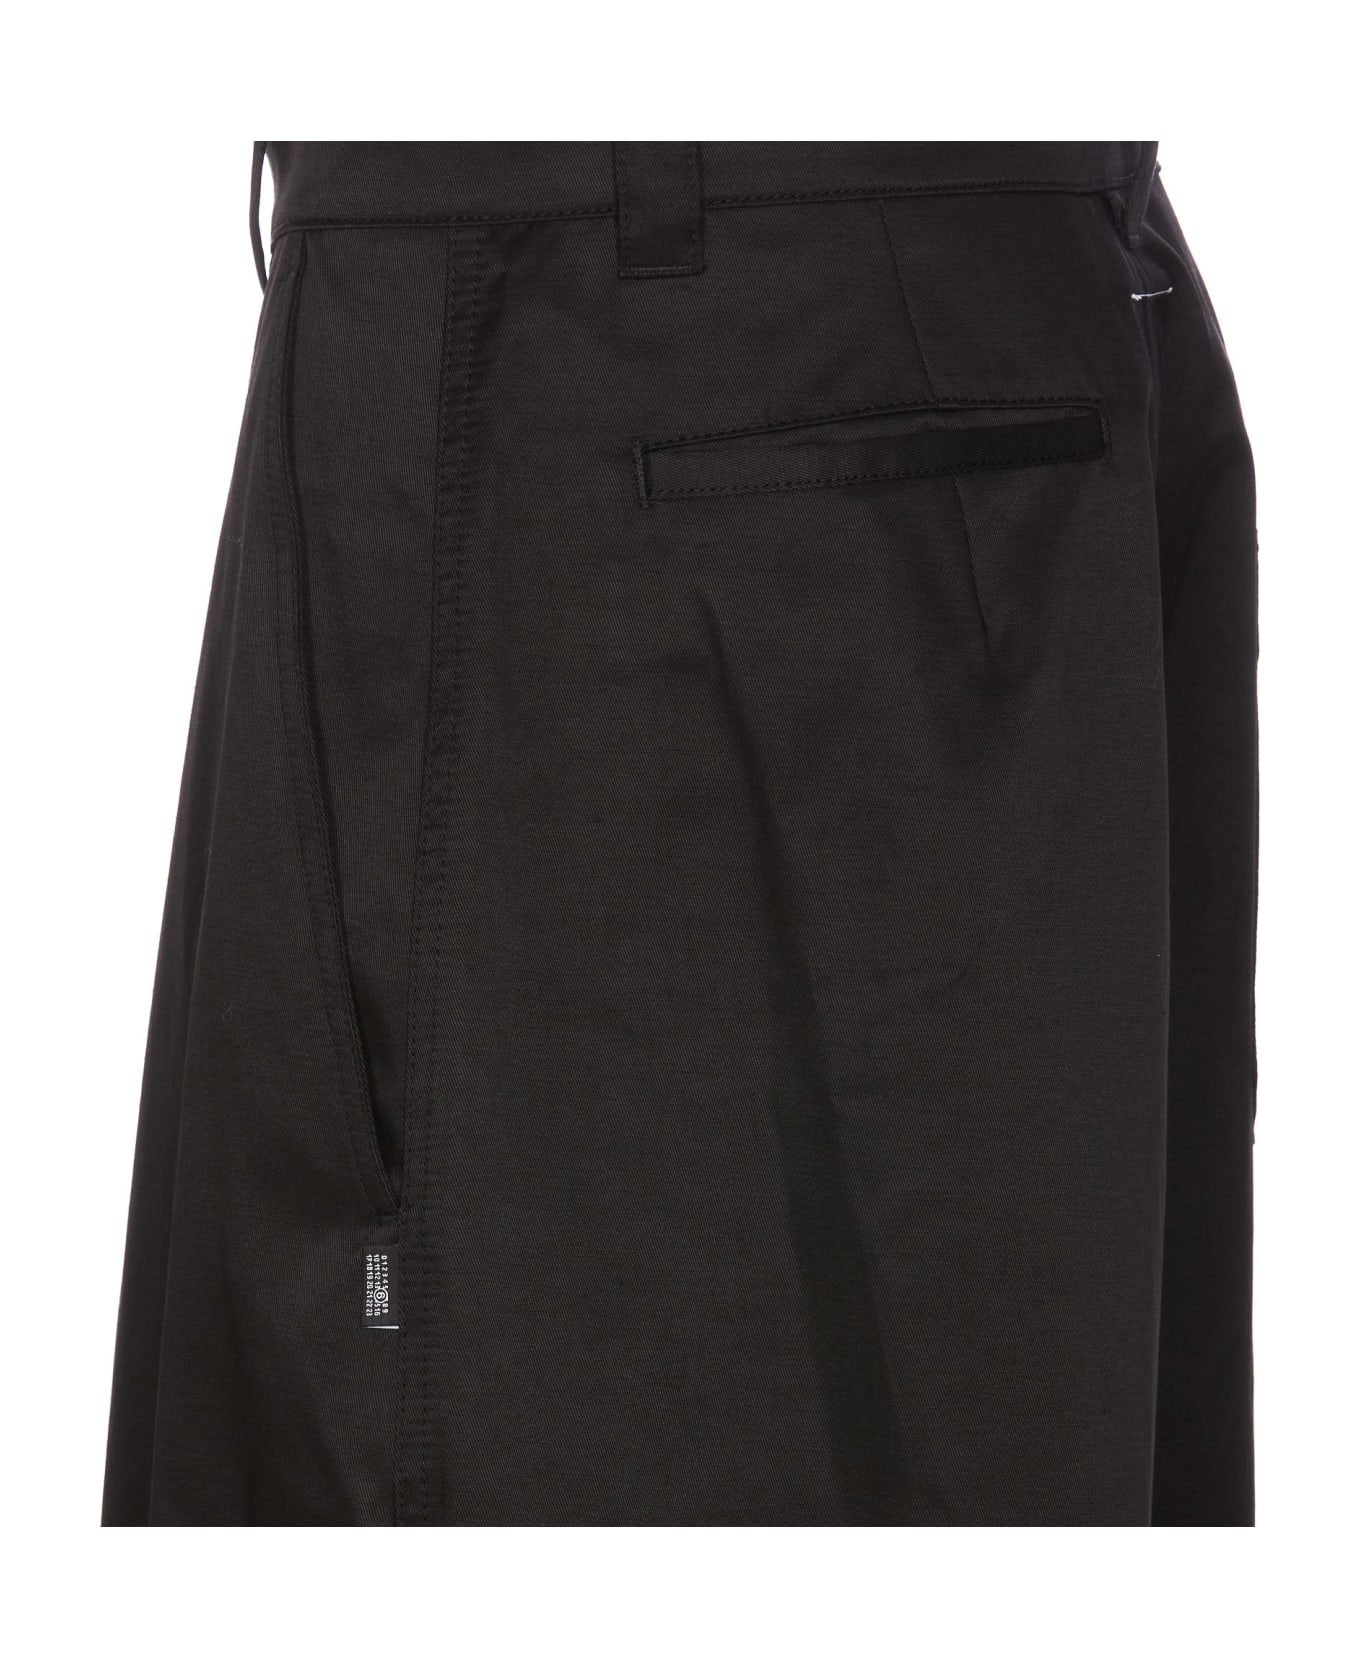 MM6 Maison Margiela Shorts - Black